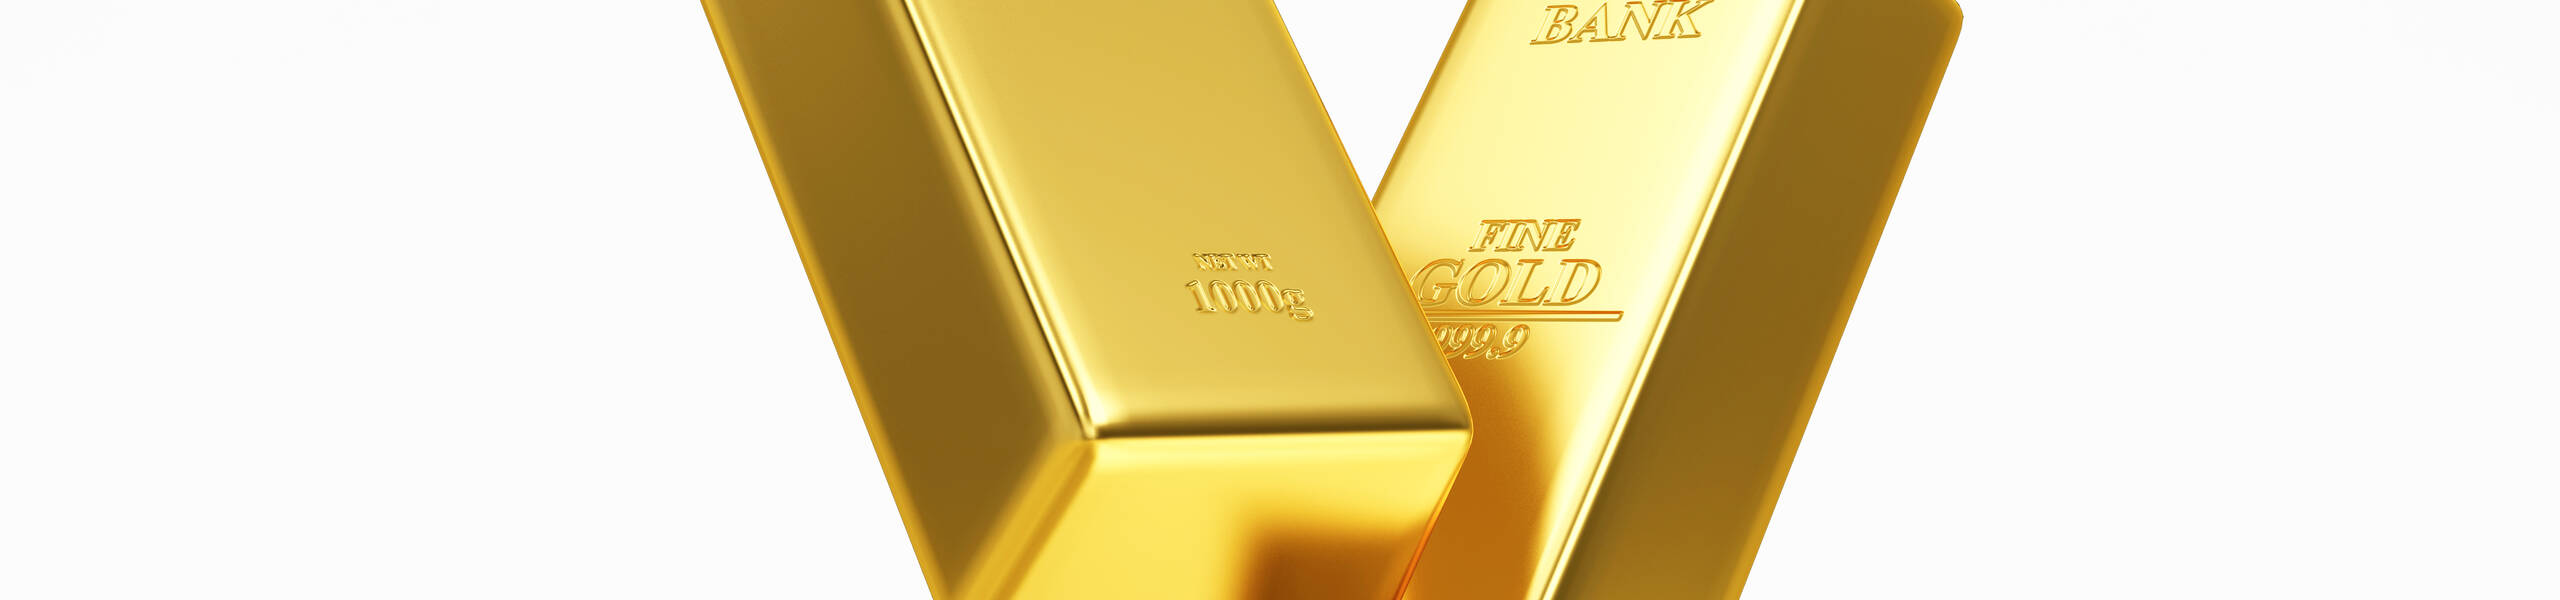 تقرير -  لماذا لم يفرح الذهب بالتضخم كما هو متوقع؟